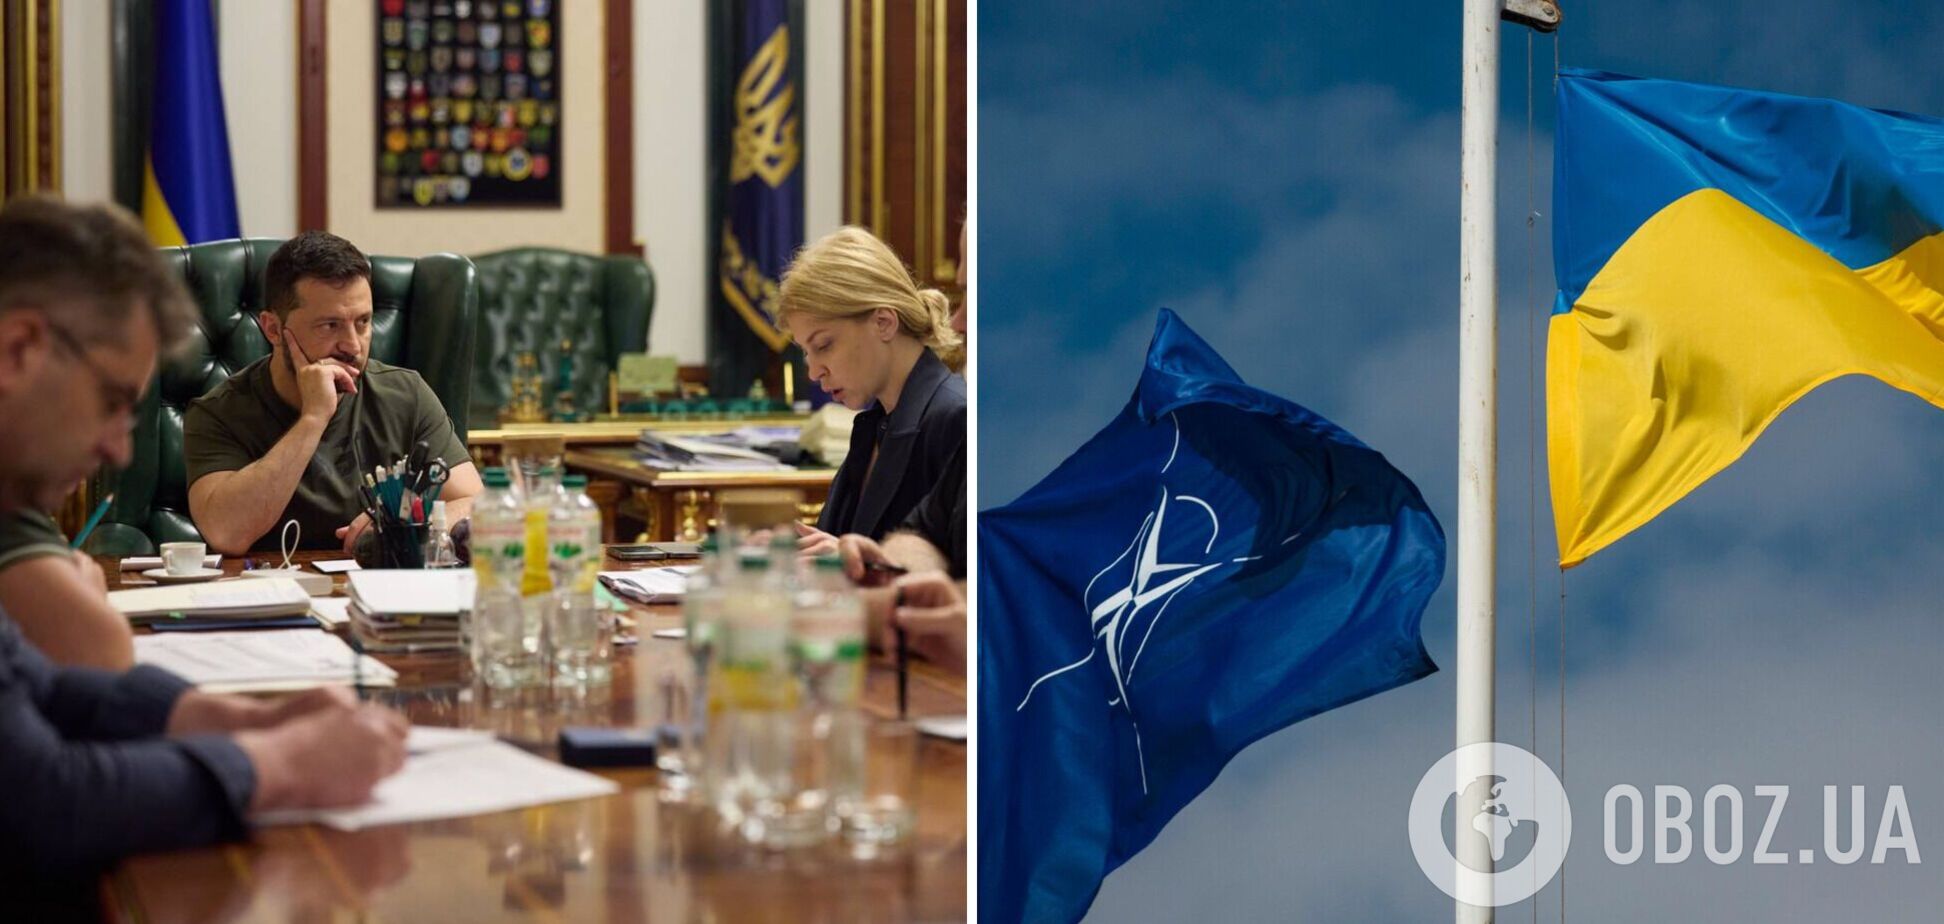 'Не сбавляем темпа': Зеленский встретился с парламентариями и чиновниками по реализации решений Вильнюсского саммита НАТО. Фото